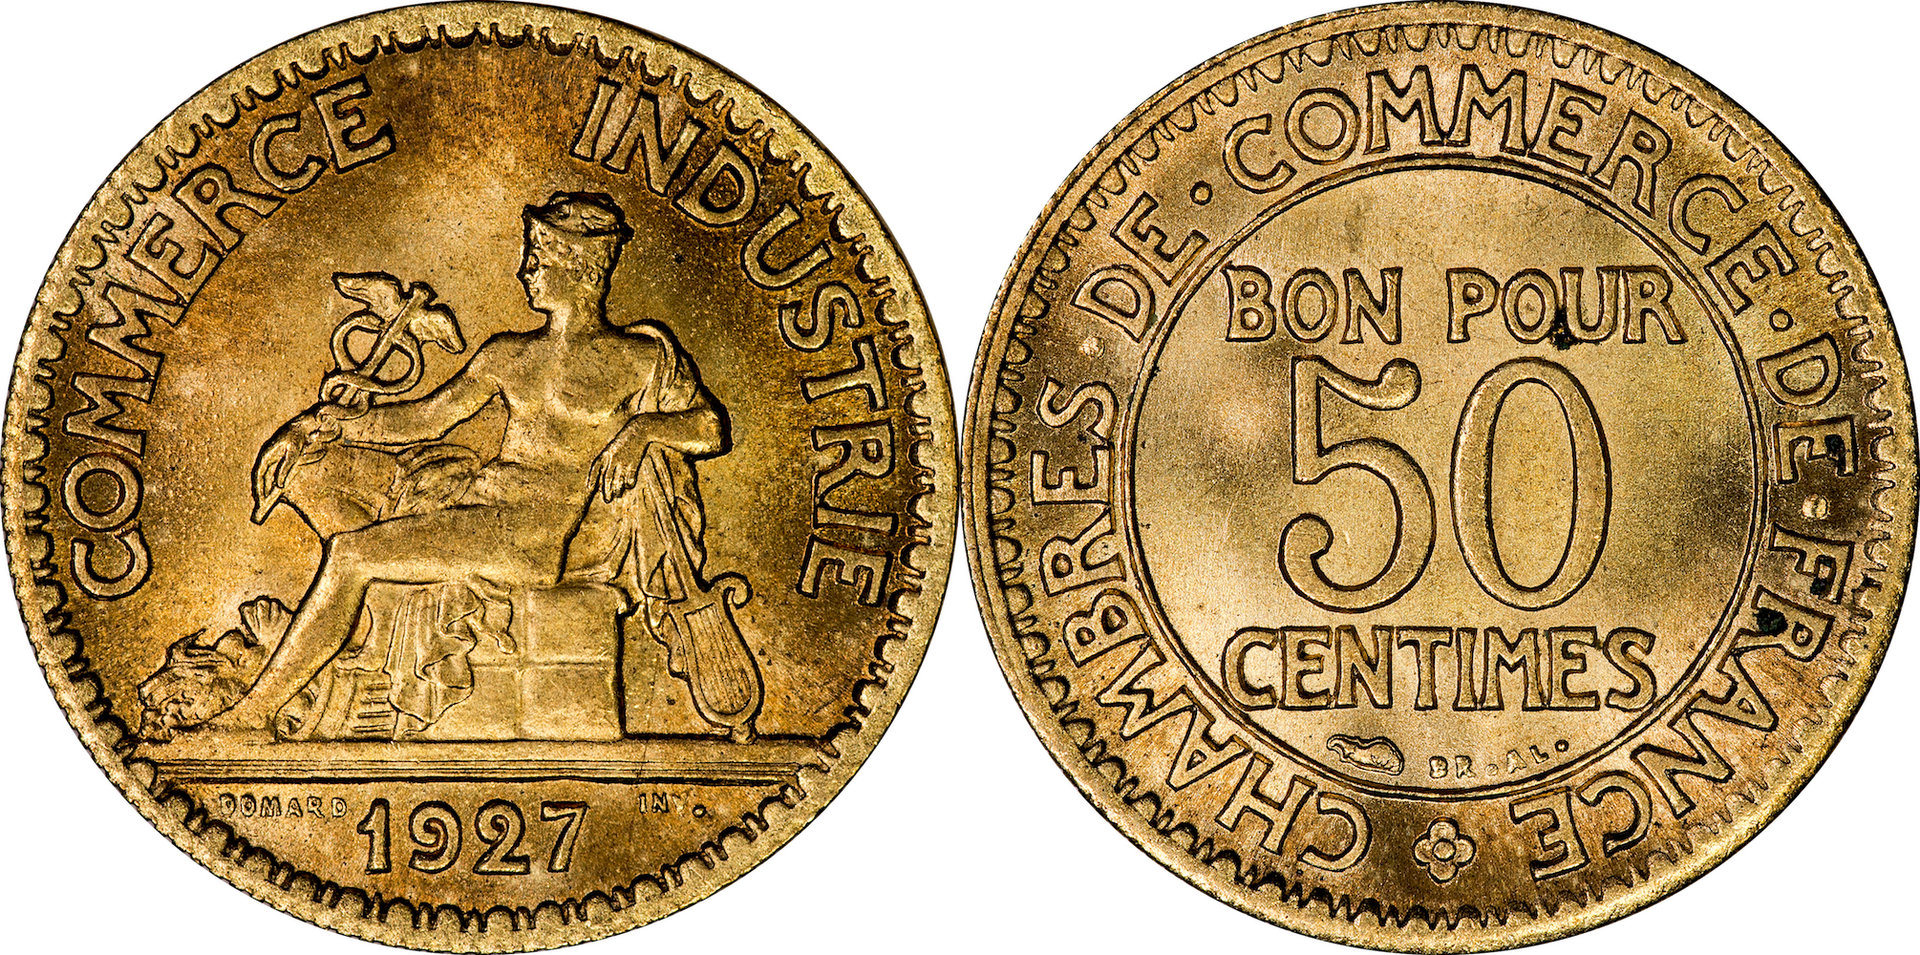 France - 1927 50 Centimes.jpg